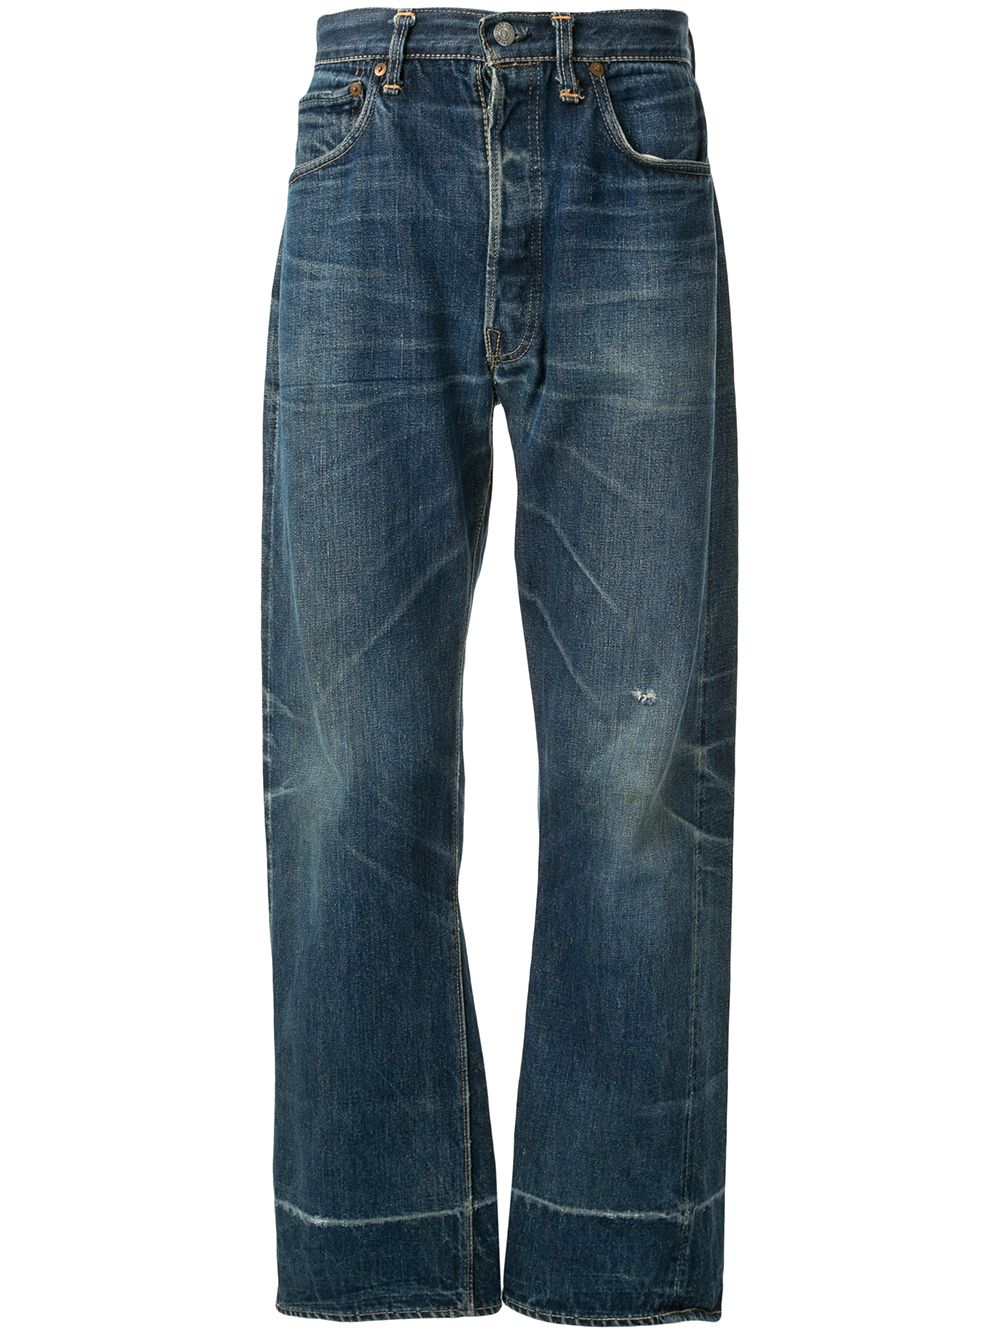 1950s levis jeans